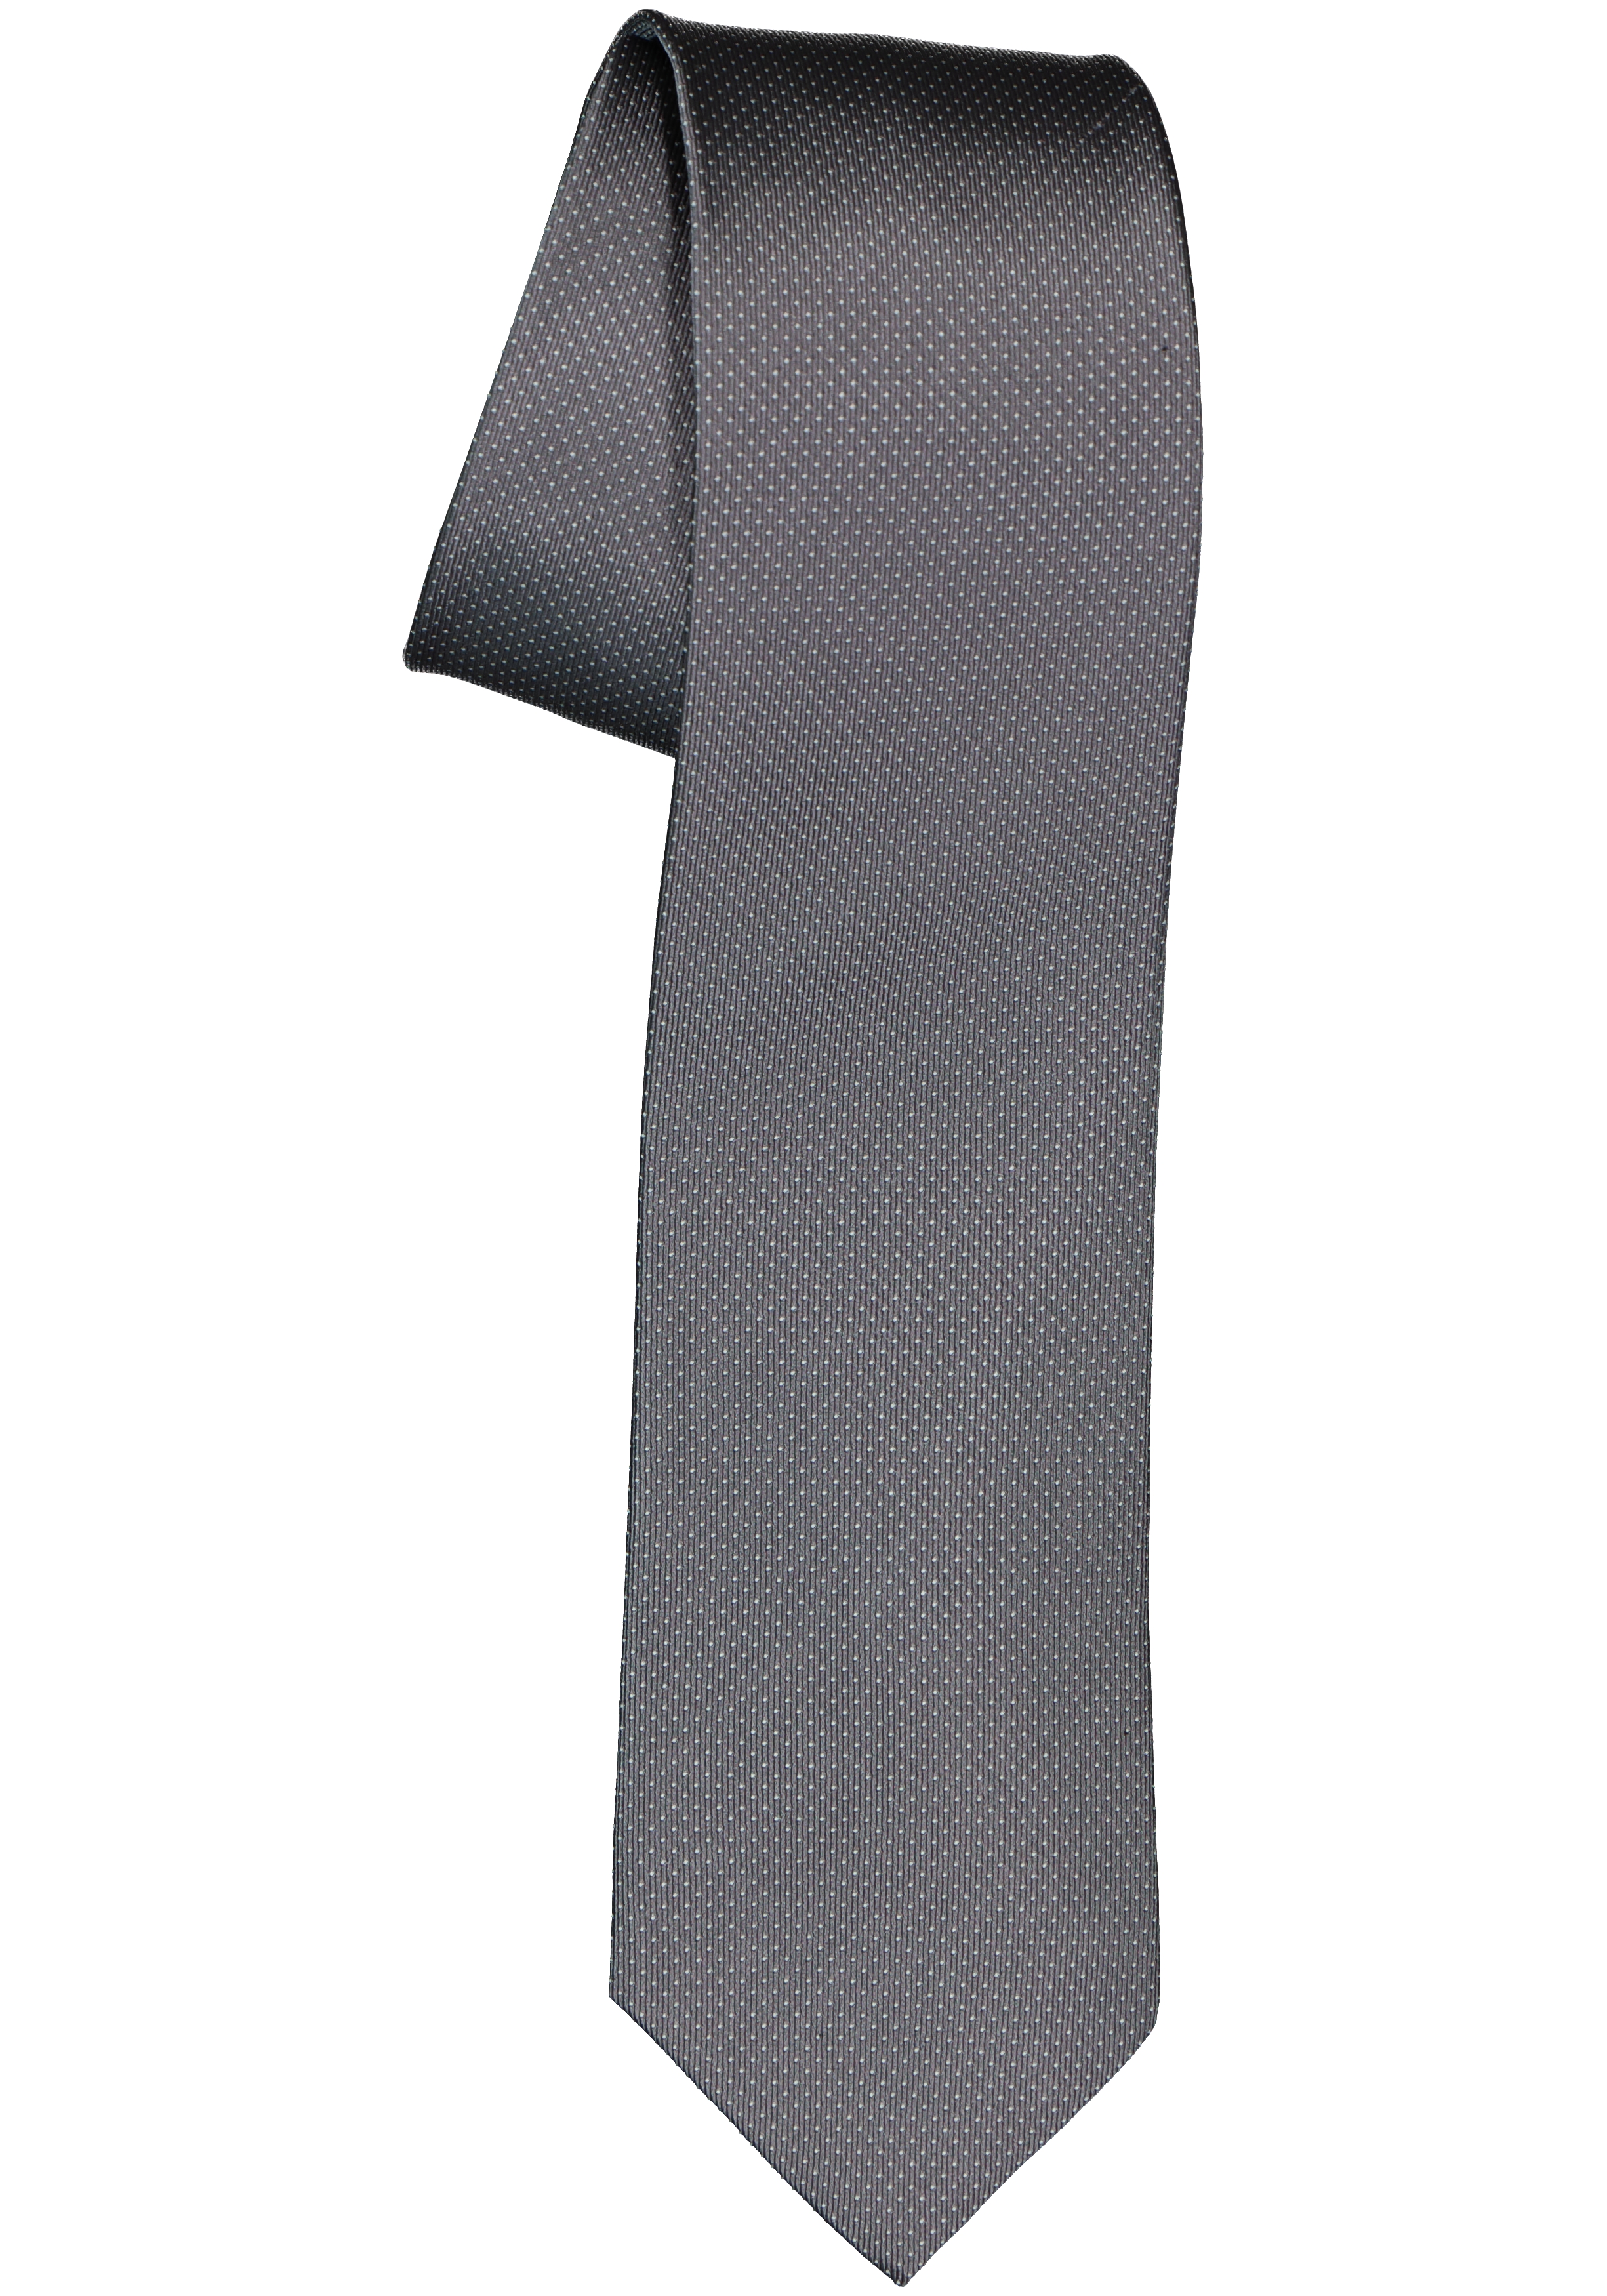 Michaelis  stropdas, zijde, antraciet grijs met wit gestipt